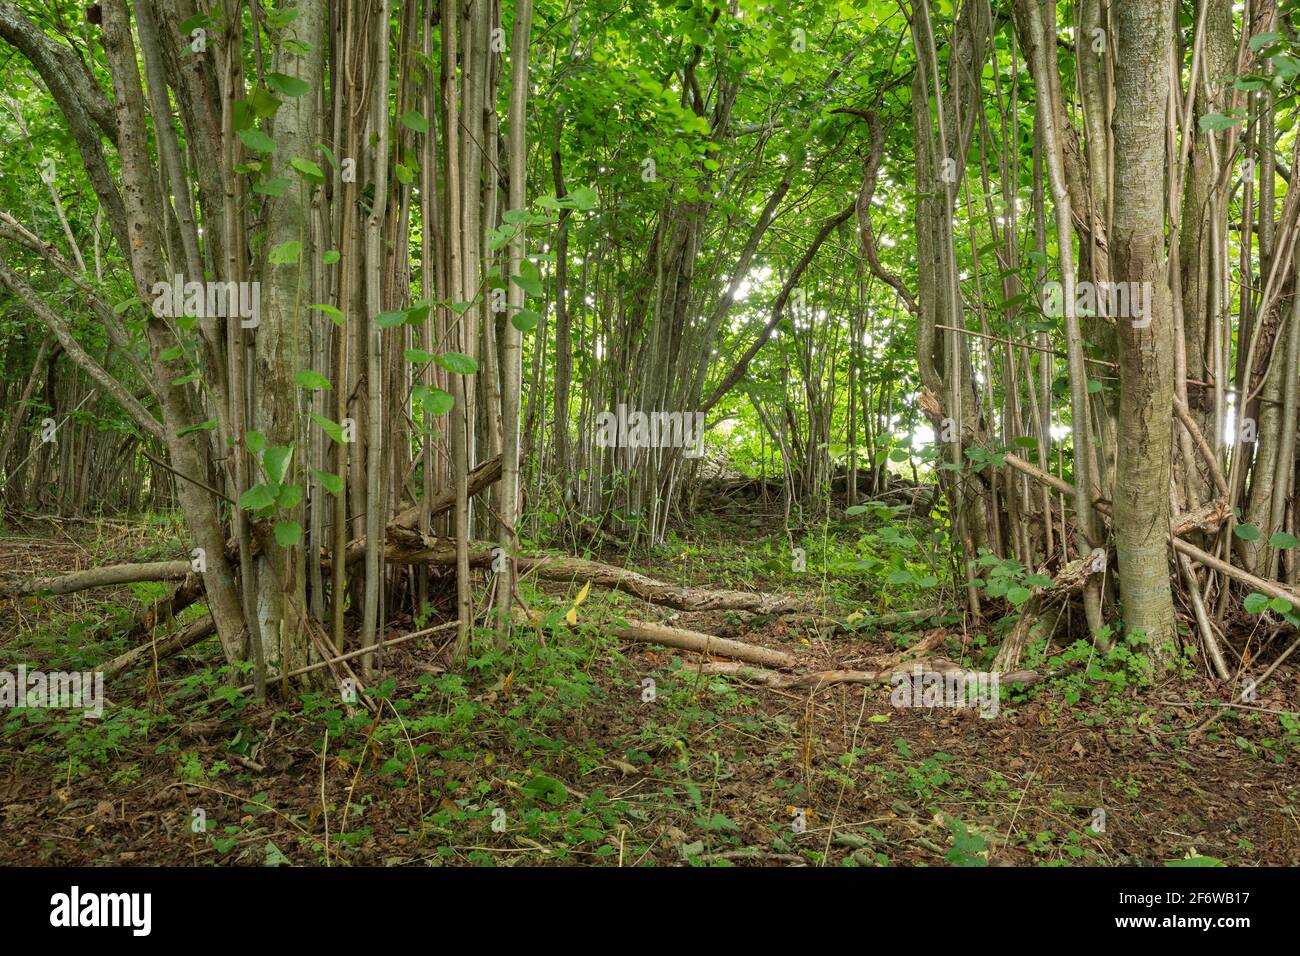 Árboles de avellana Con madera viva y seca, este tipo de ambiente es importante para muchos insectos en peligro de extinción Foto de stock